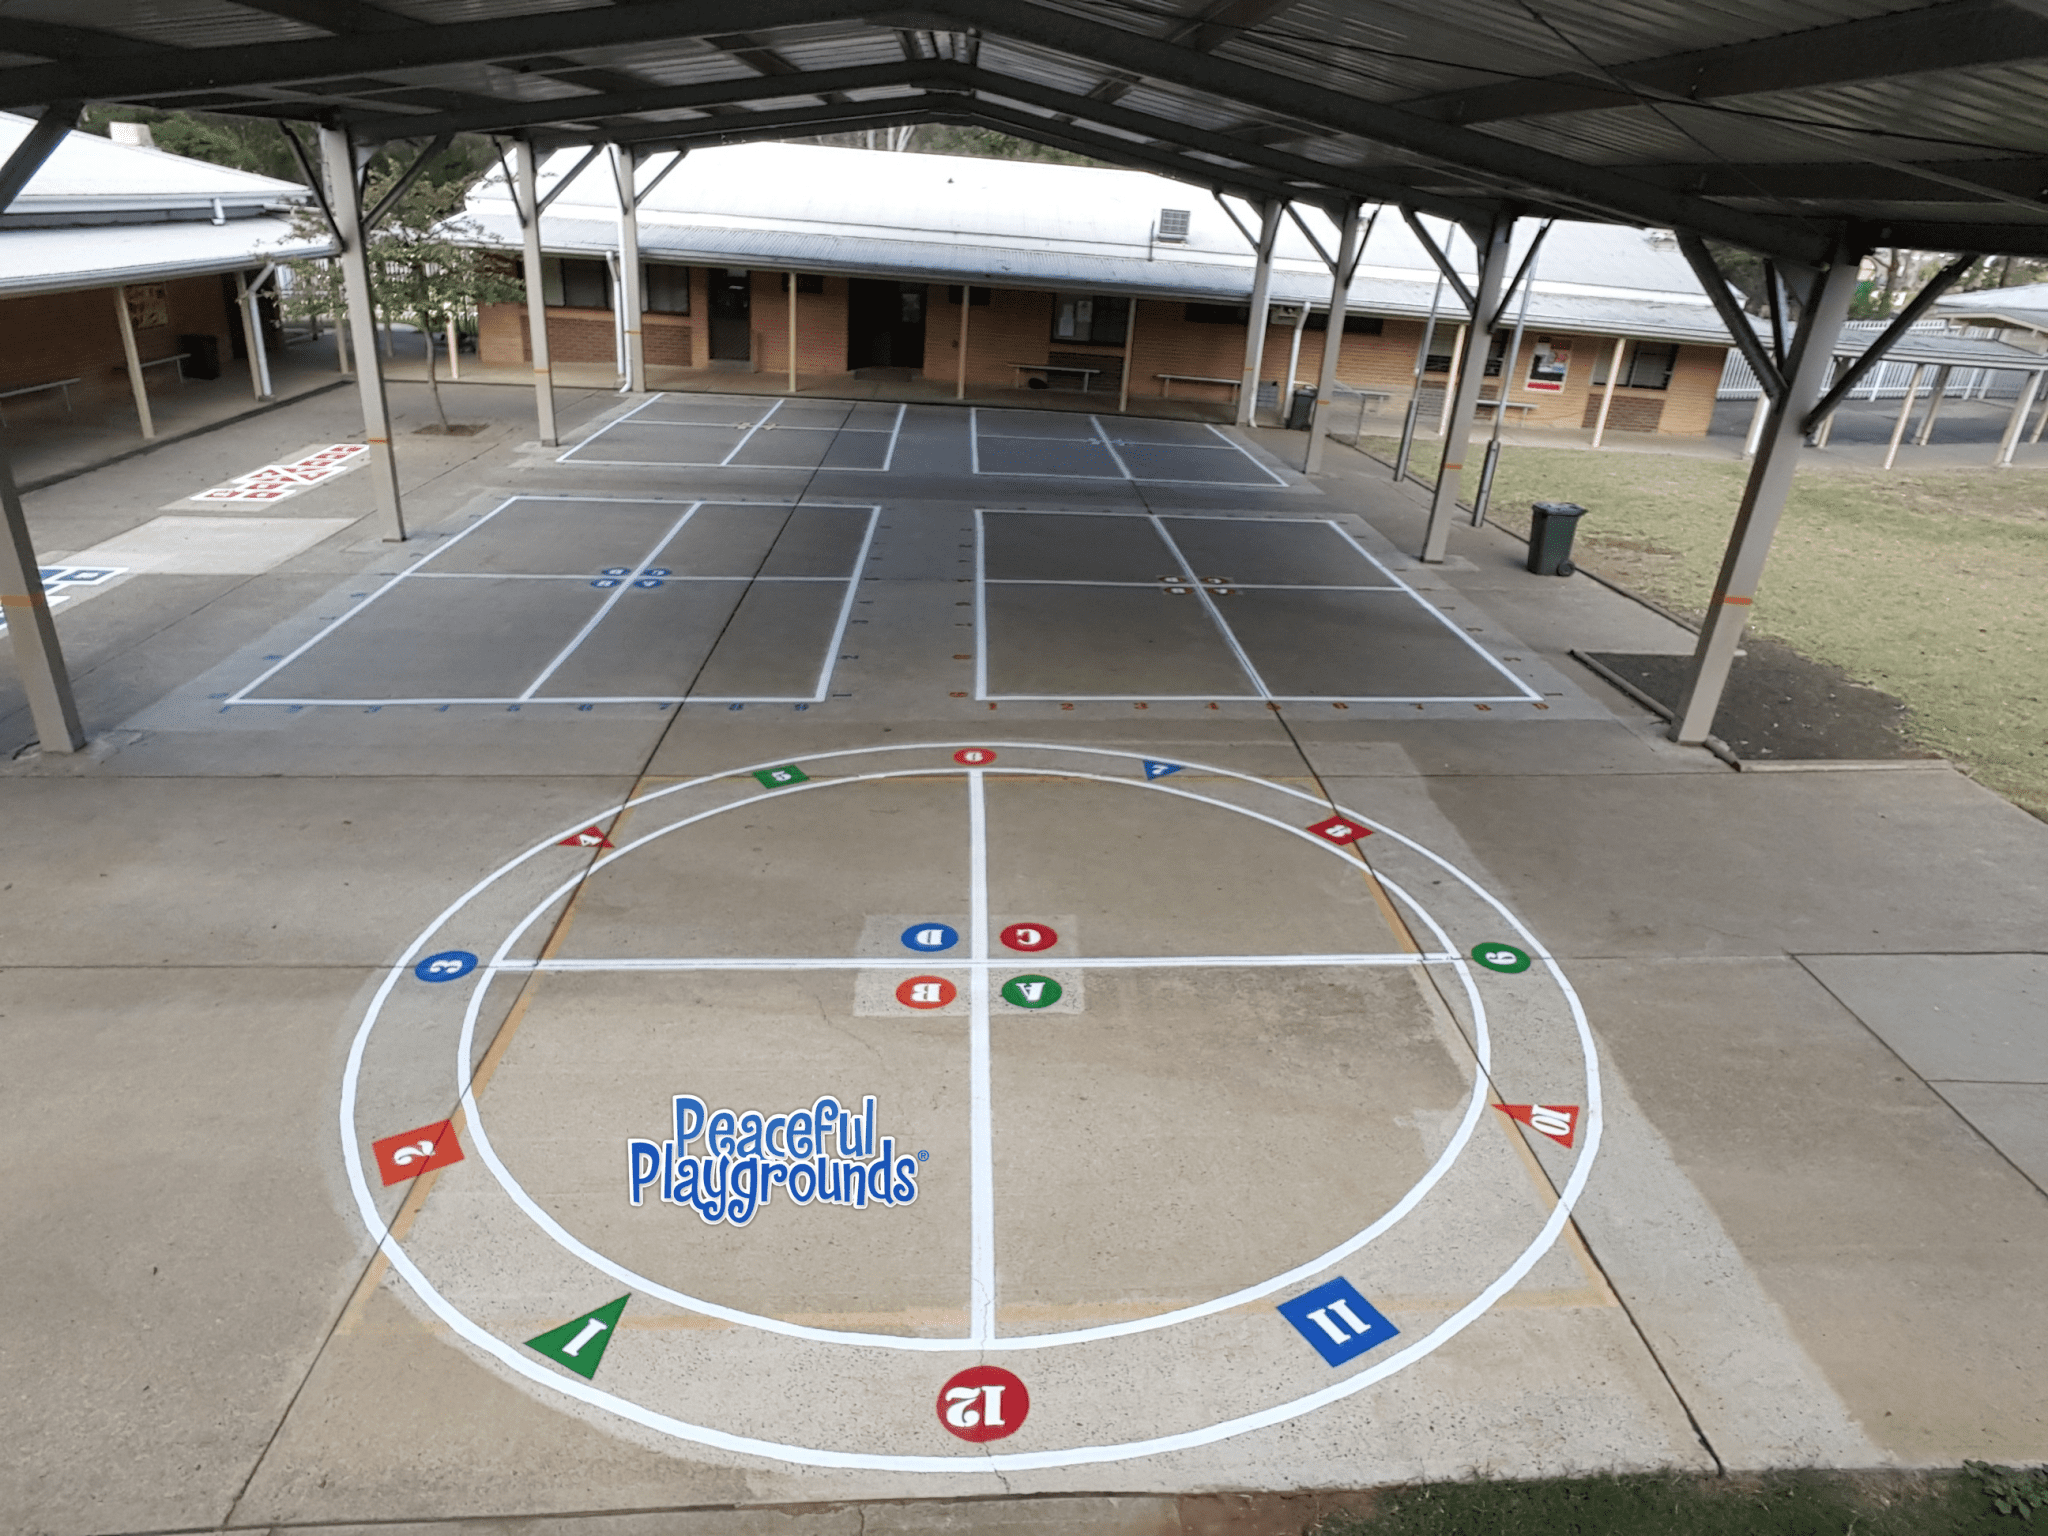 Playground markings